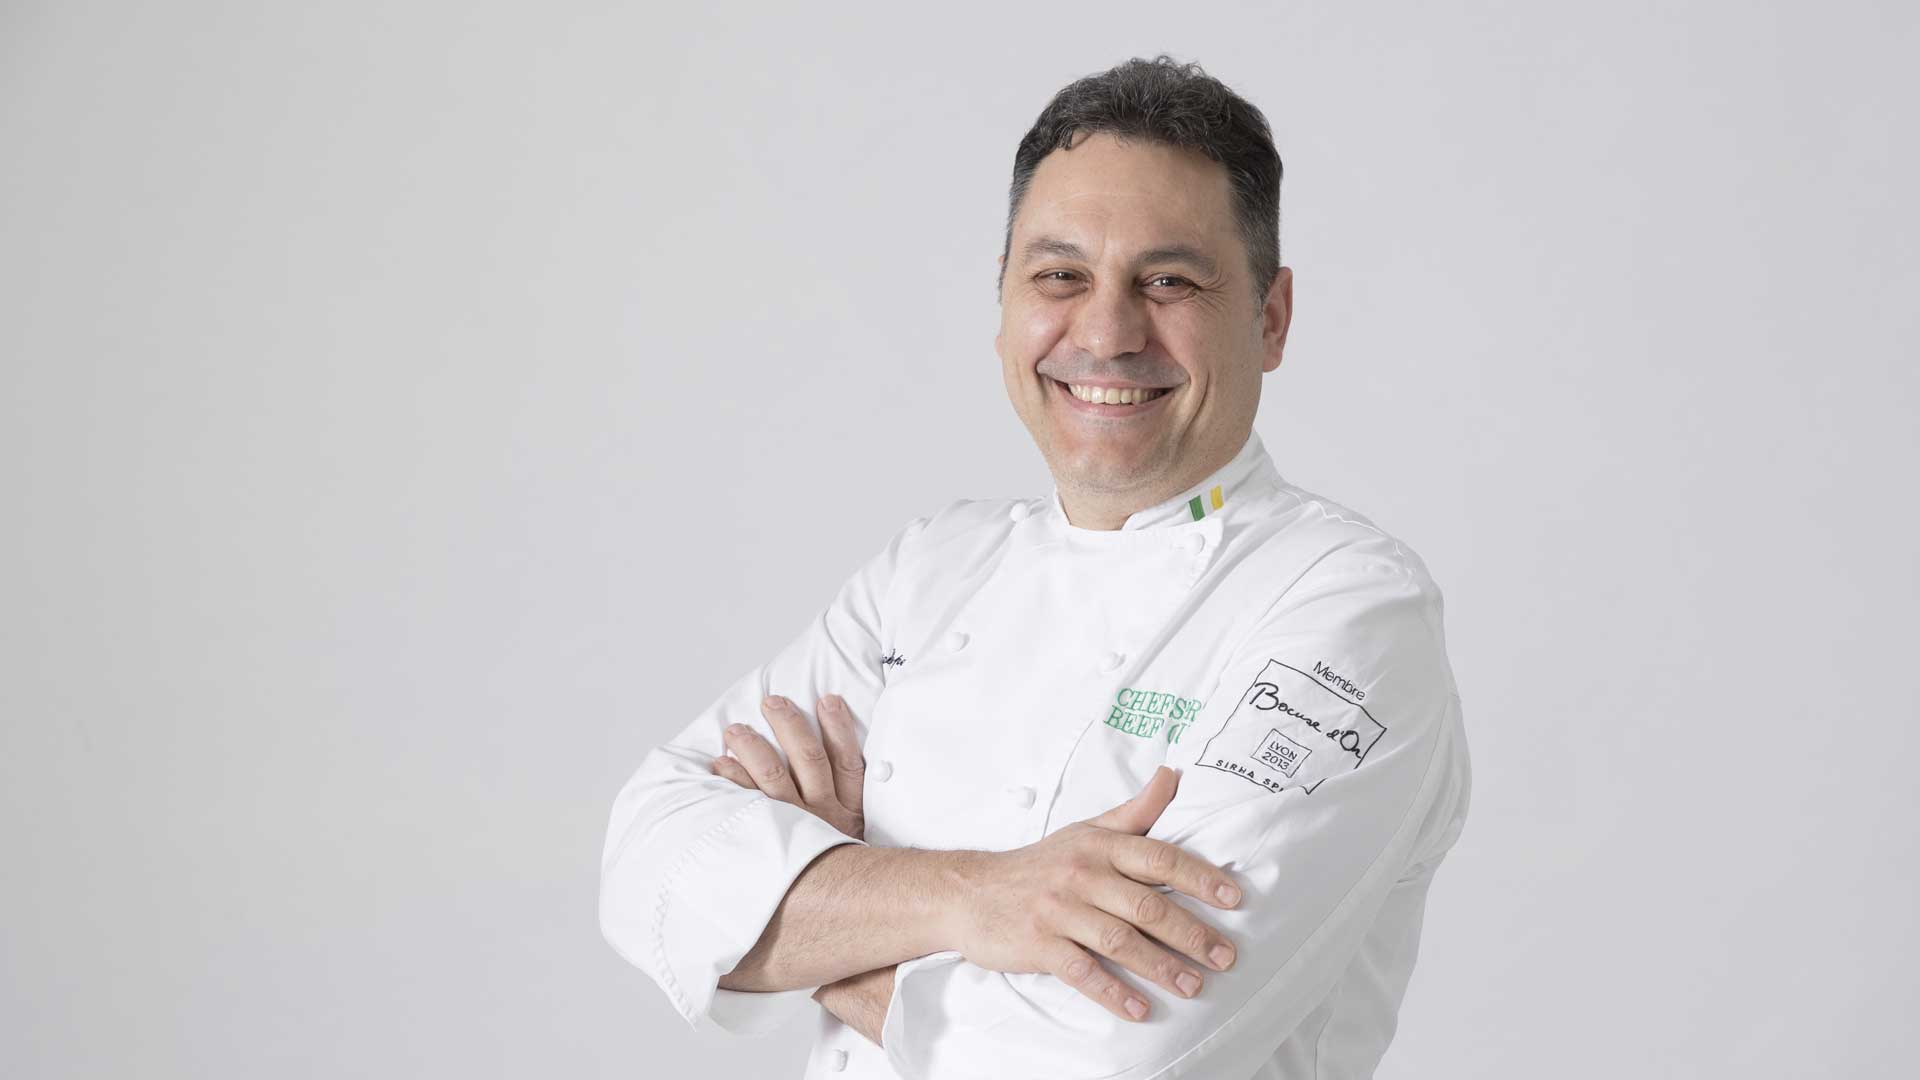 Daniele Repetti, chef stellato del Nido del Picchio